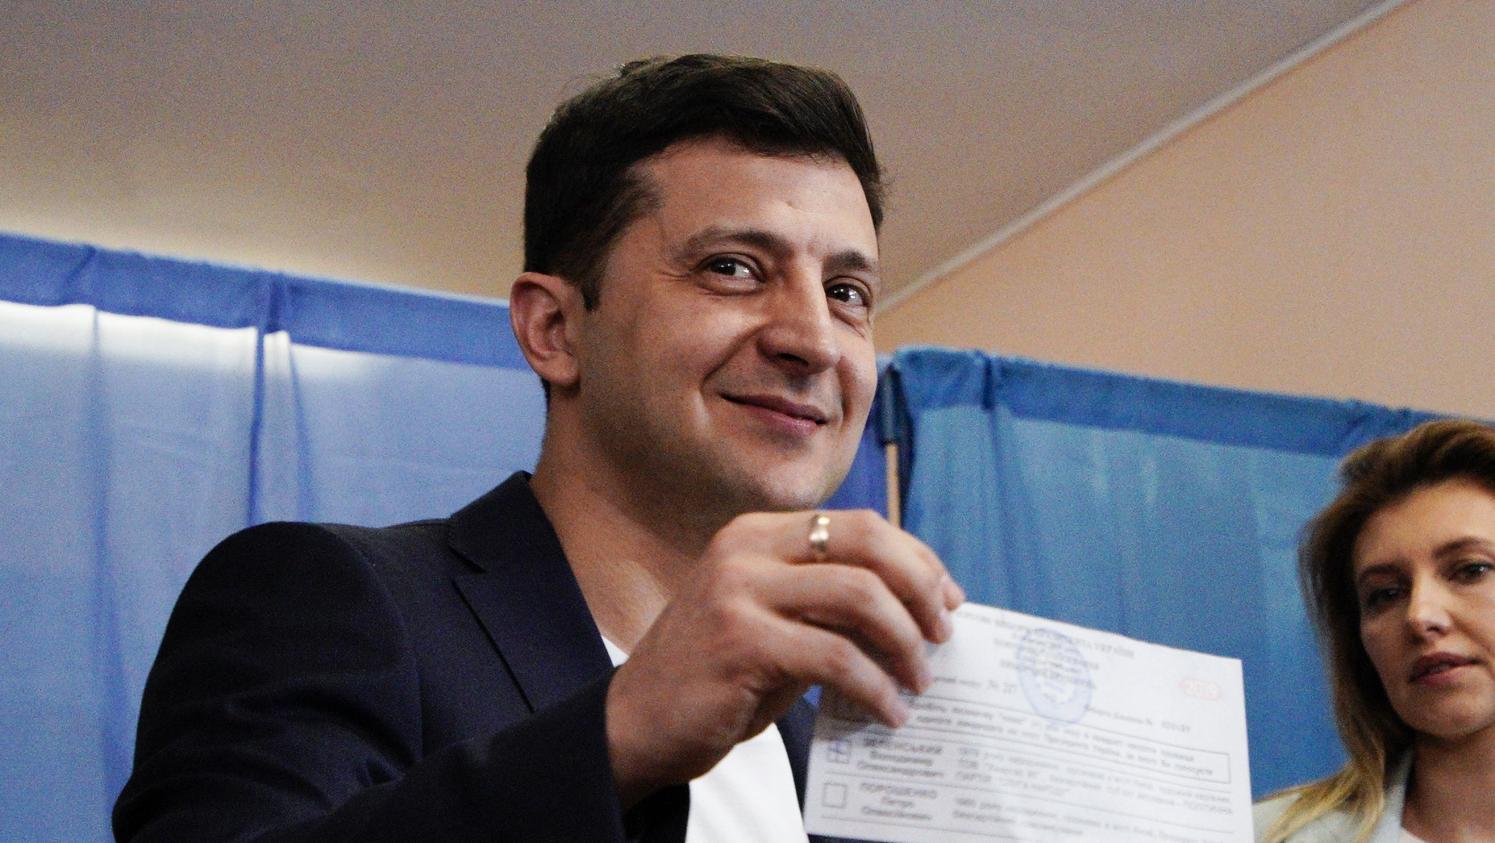 Ukraine : le comédien Volodymyr Zelensky élu président avec 73% des voix, selon un sondage sortie des urnes